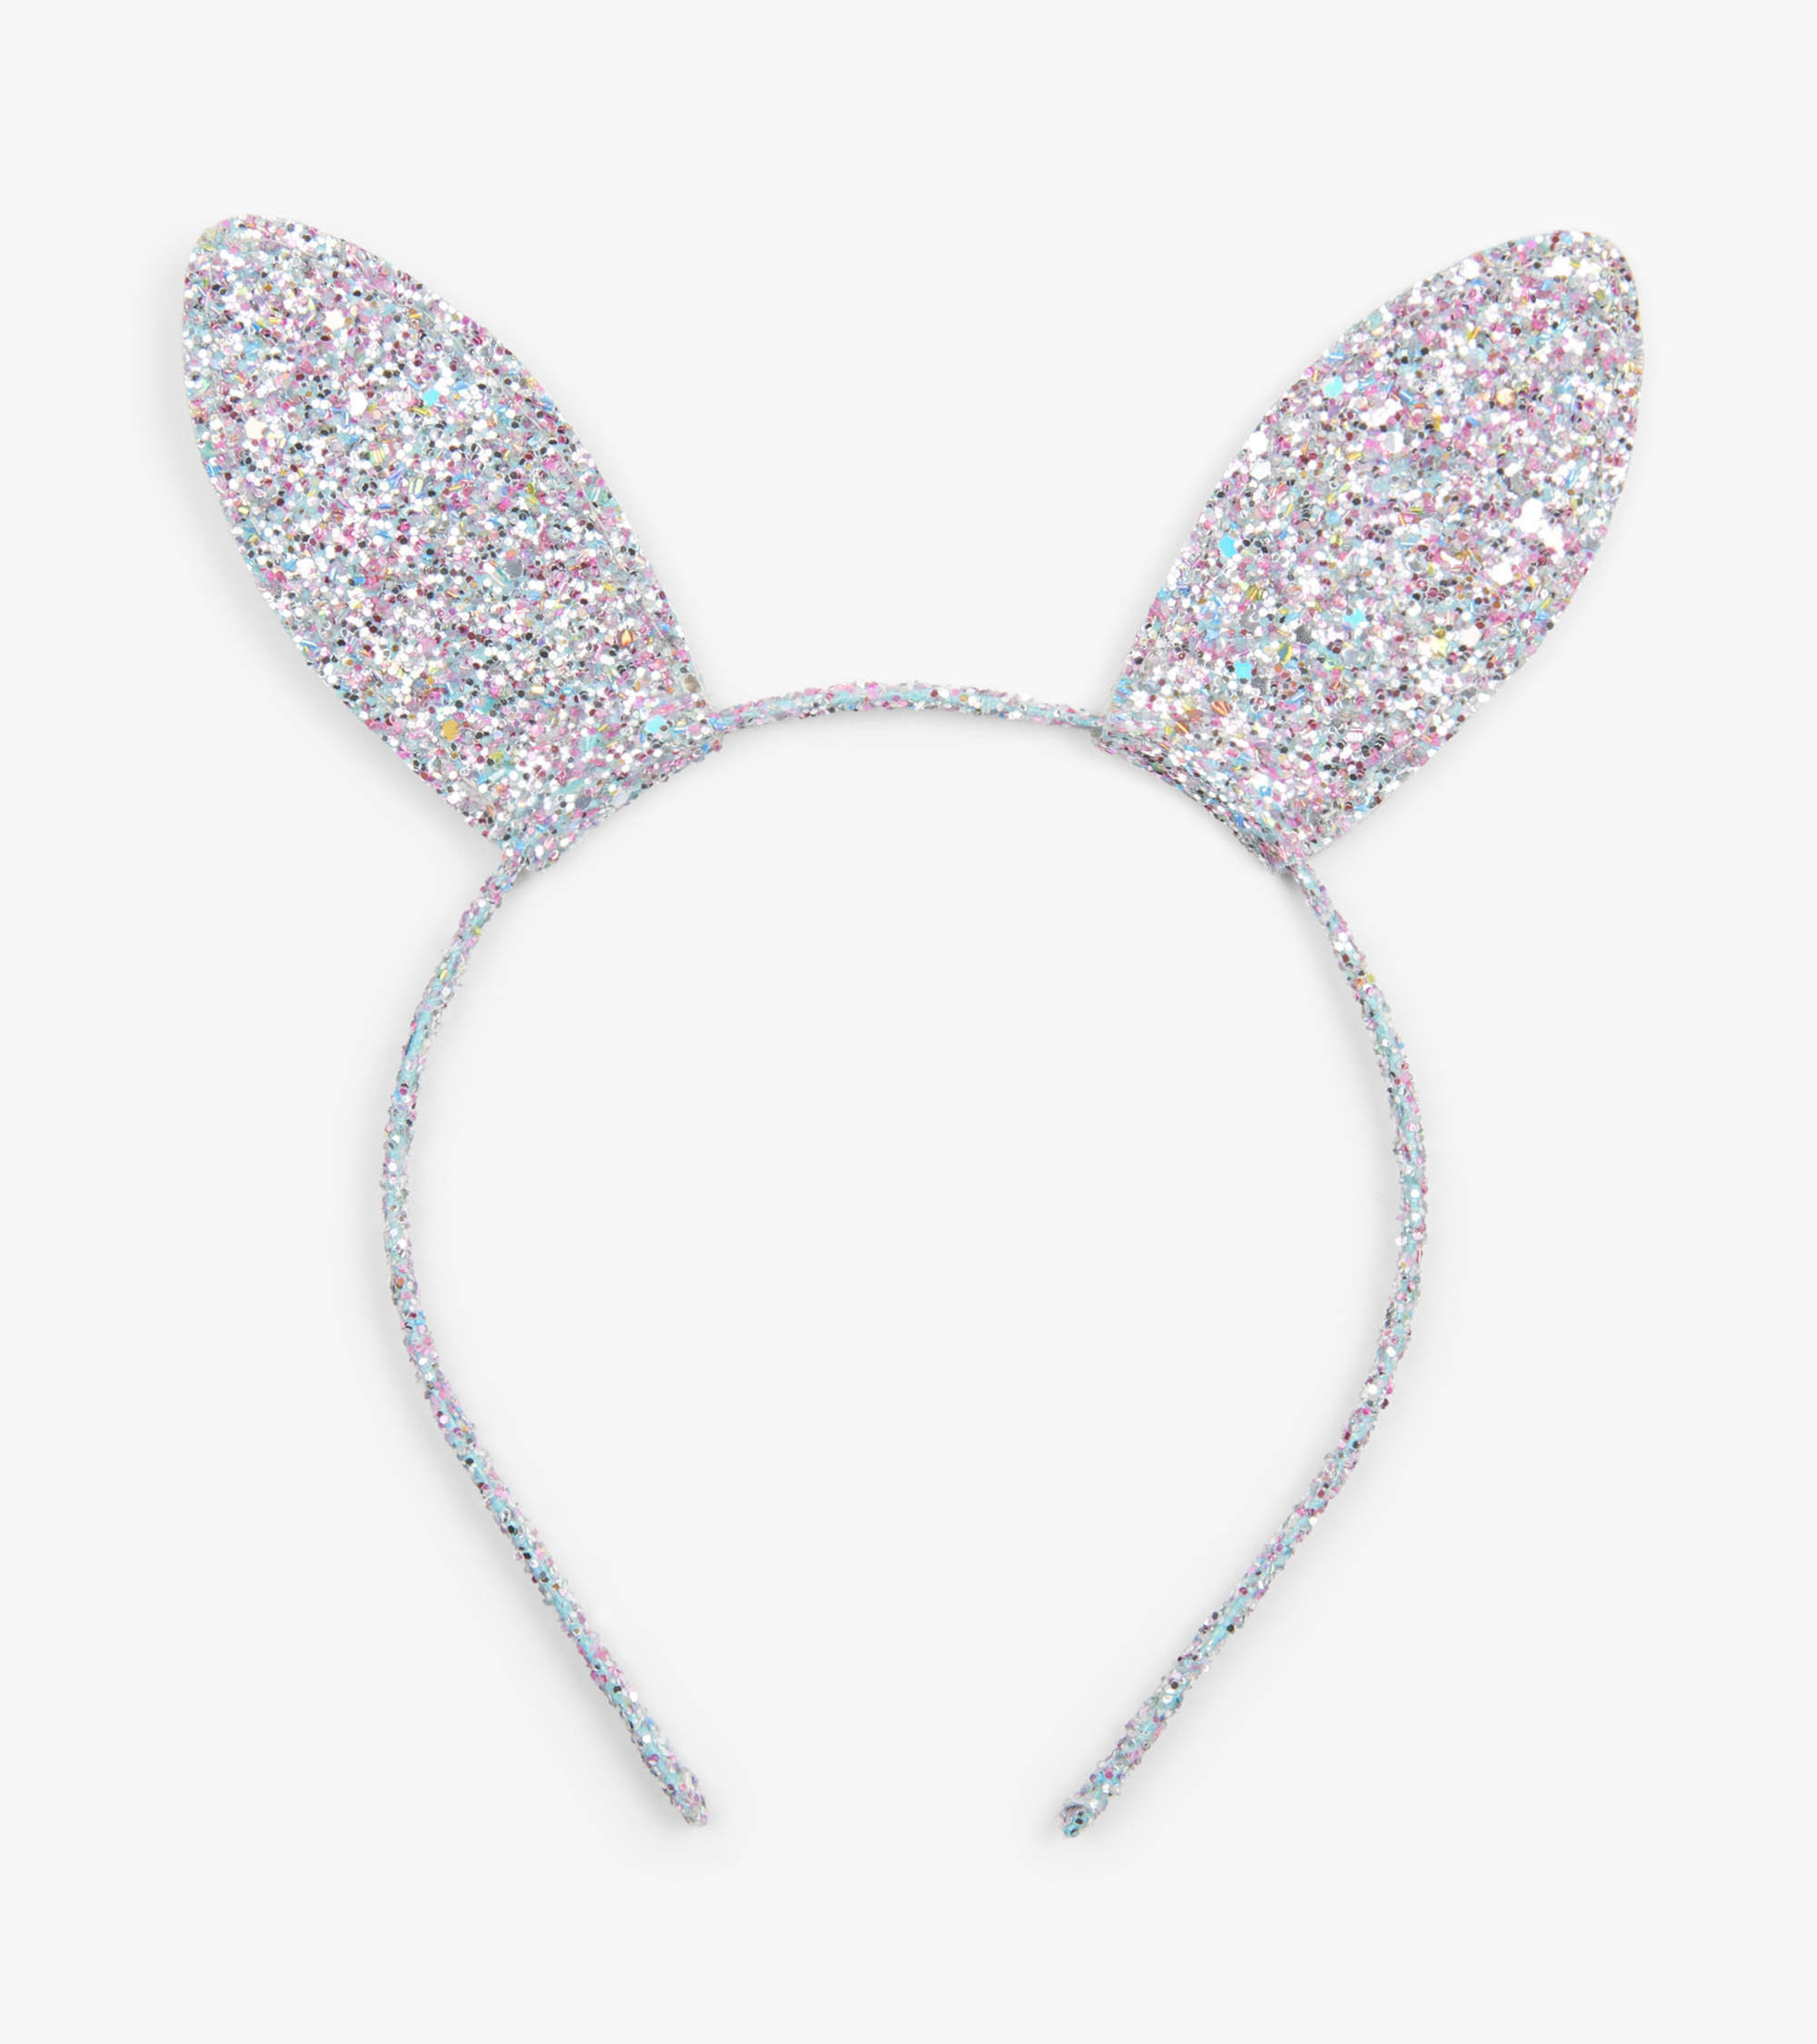 Kaleidoscopic Bunny Ears Headband - Hatley US